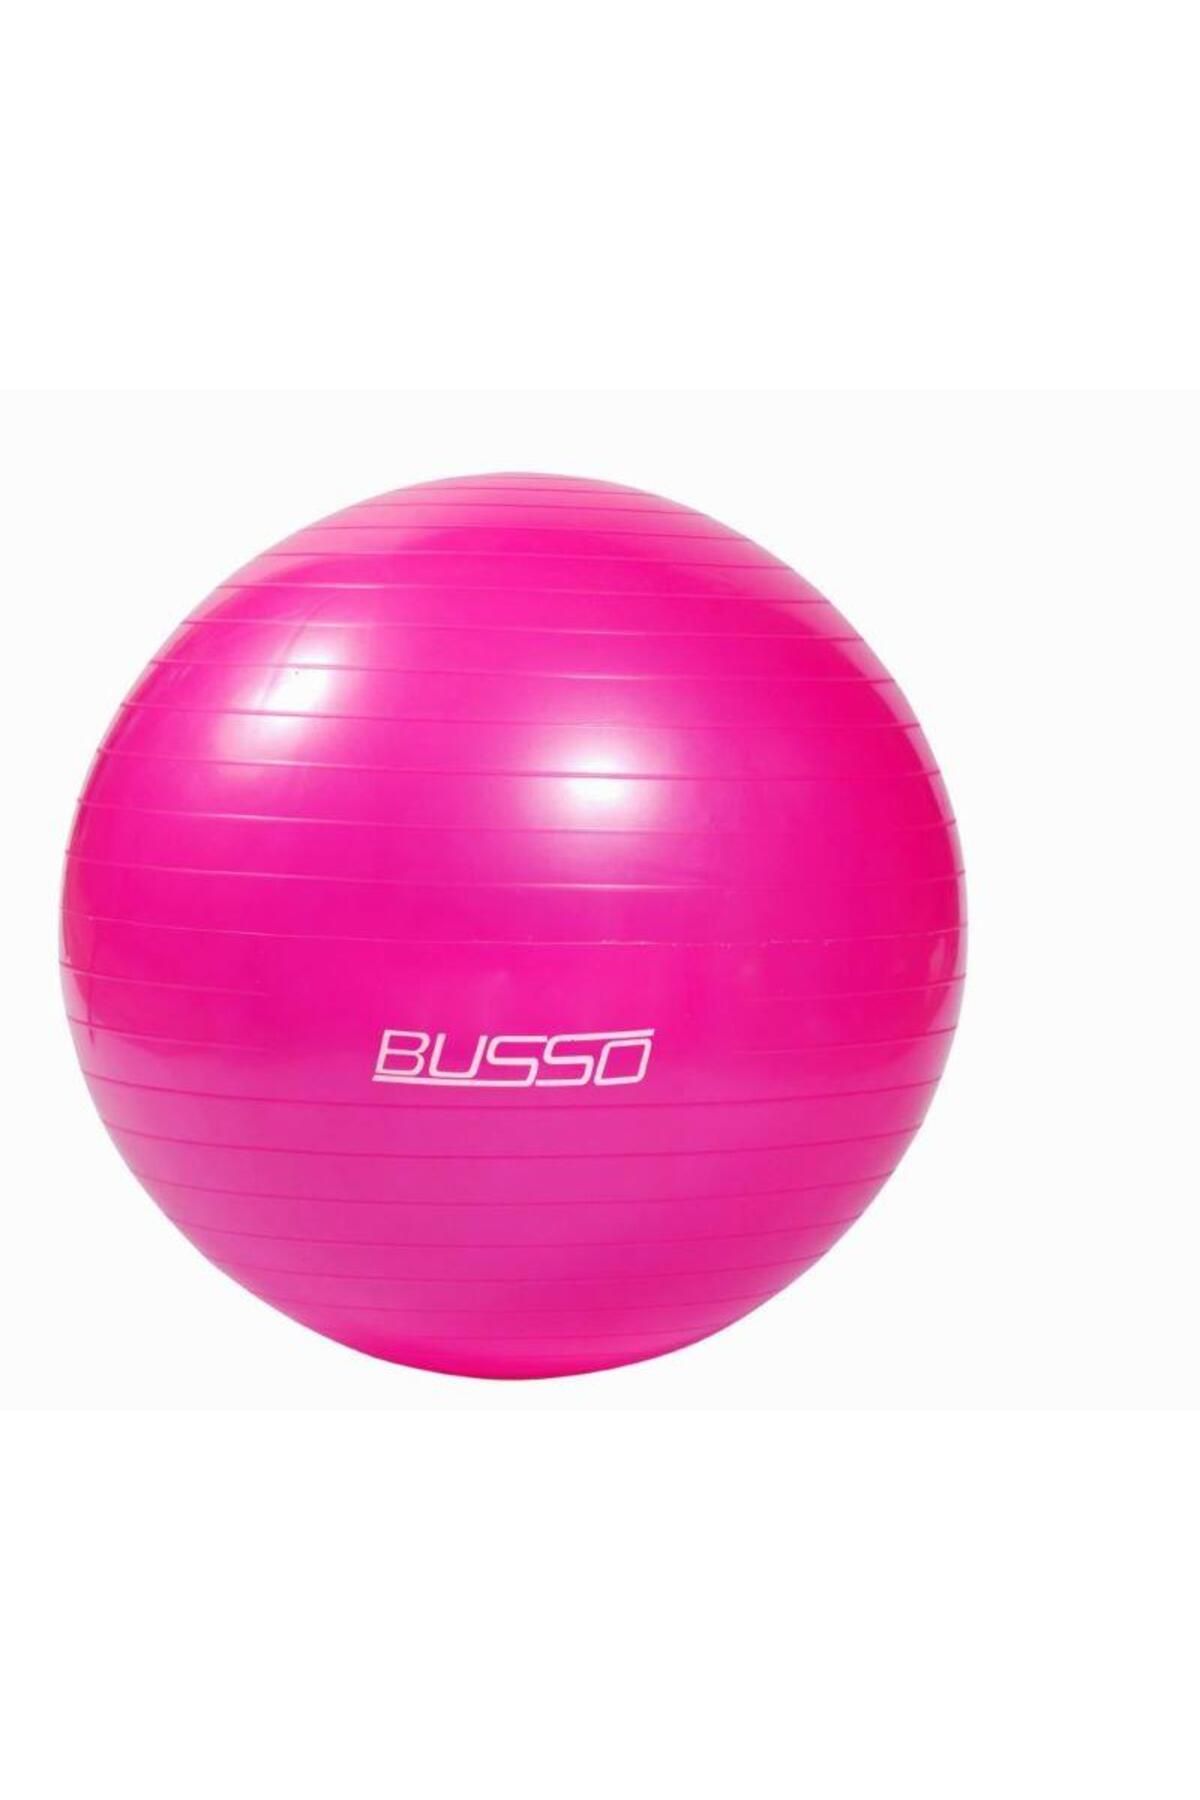 Busso Gym26-25 Cm Pilates Topu Polybag